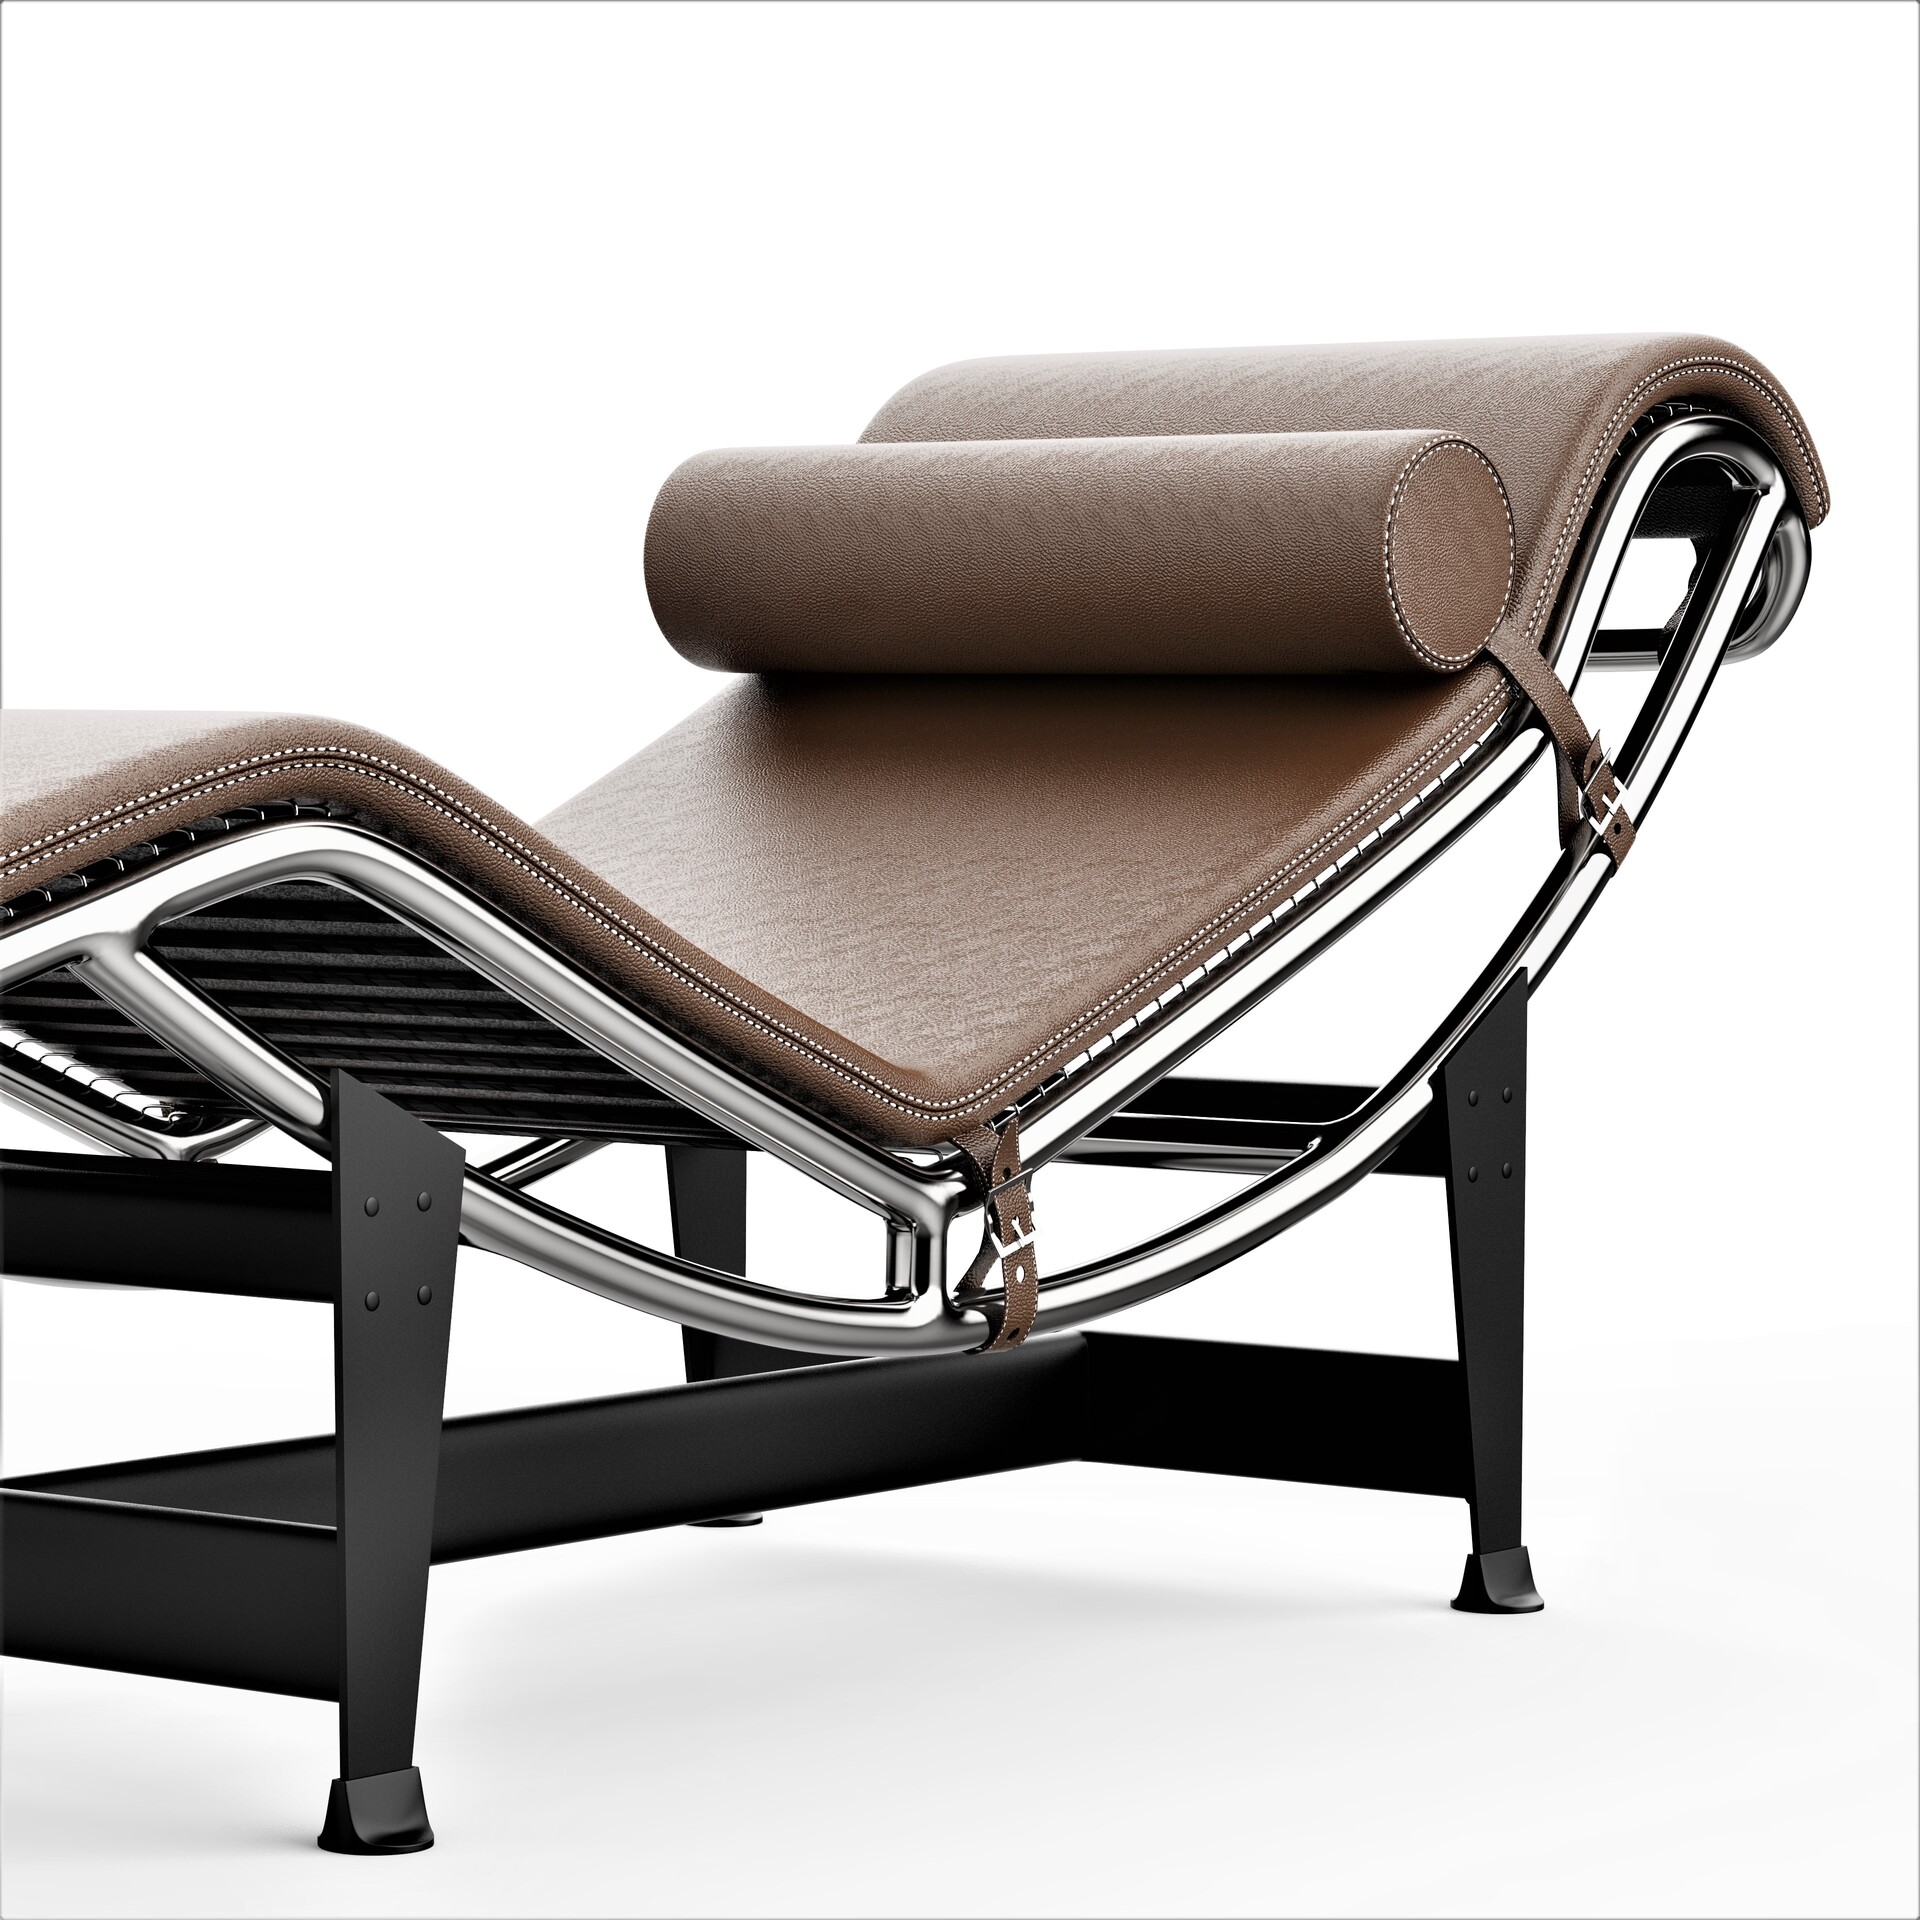 3D Le Corbusier LC4 Chaise Lounge